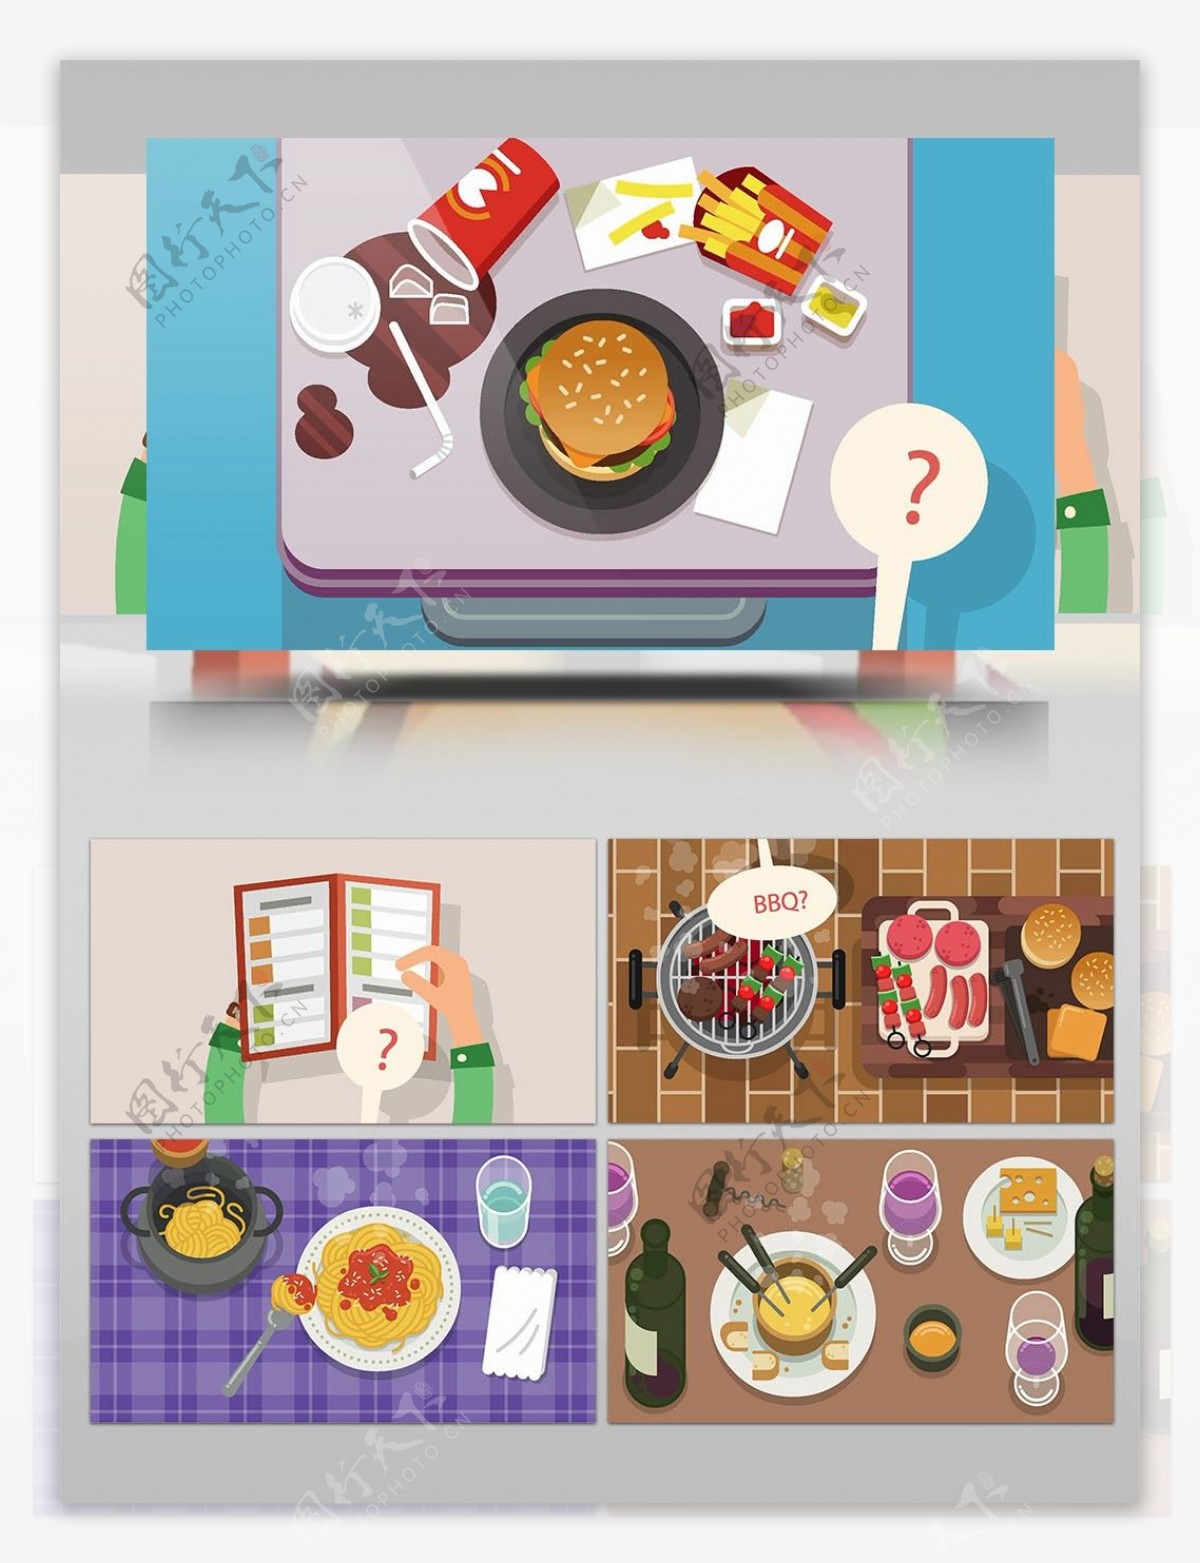 美食料理与手部动作MG动画解说AE模板